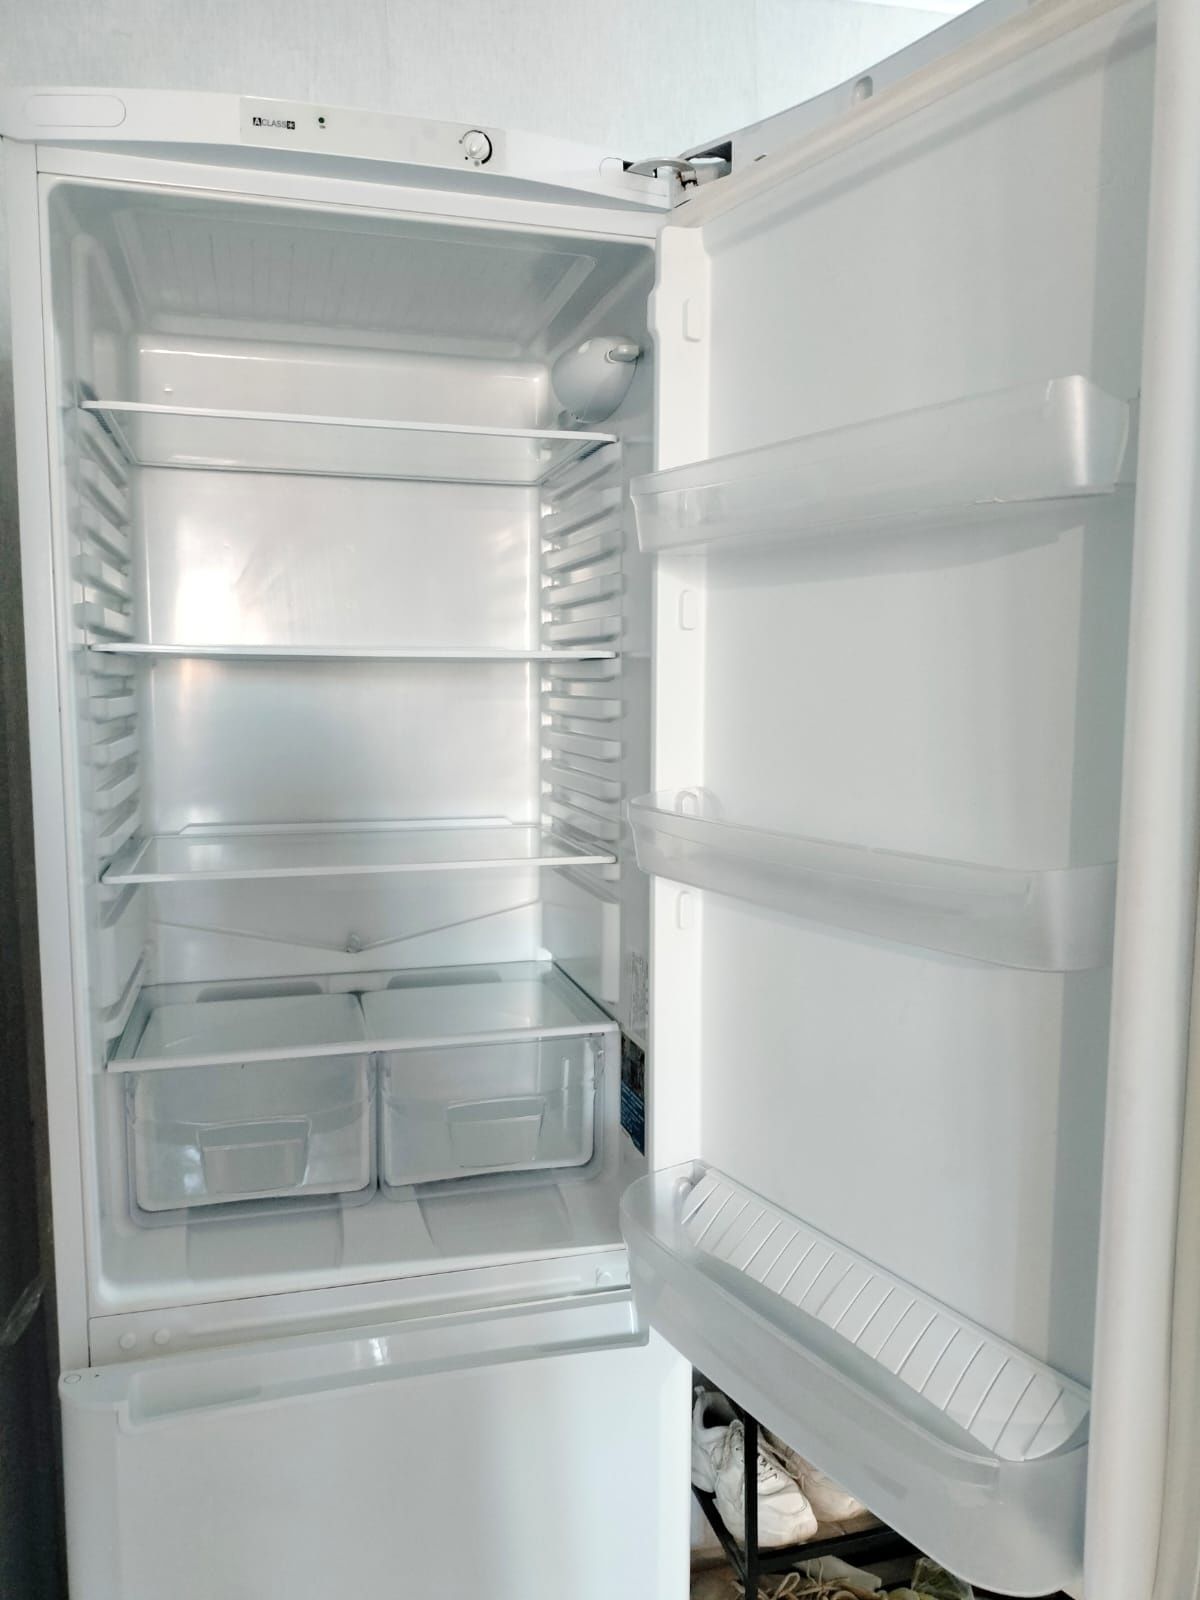 Продам 2-х камерный холодильник Индезит